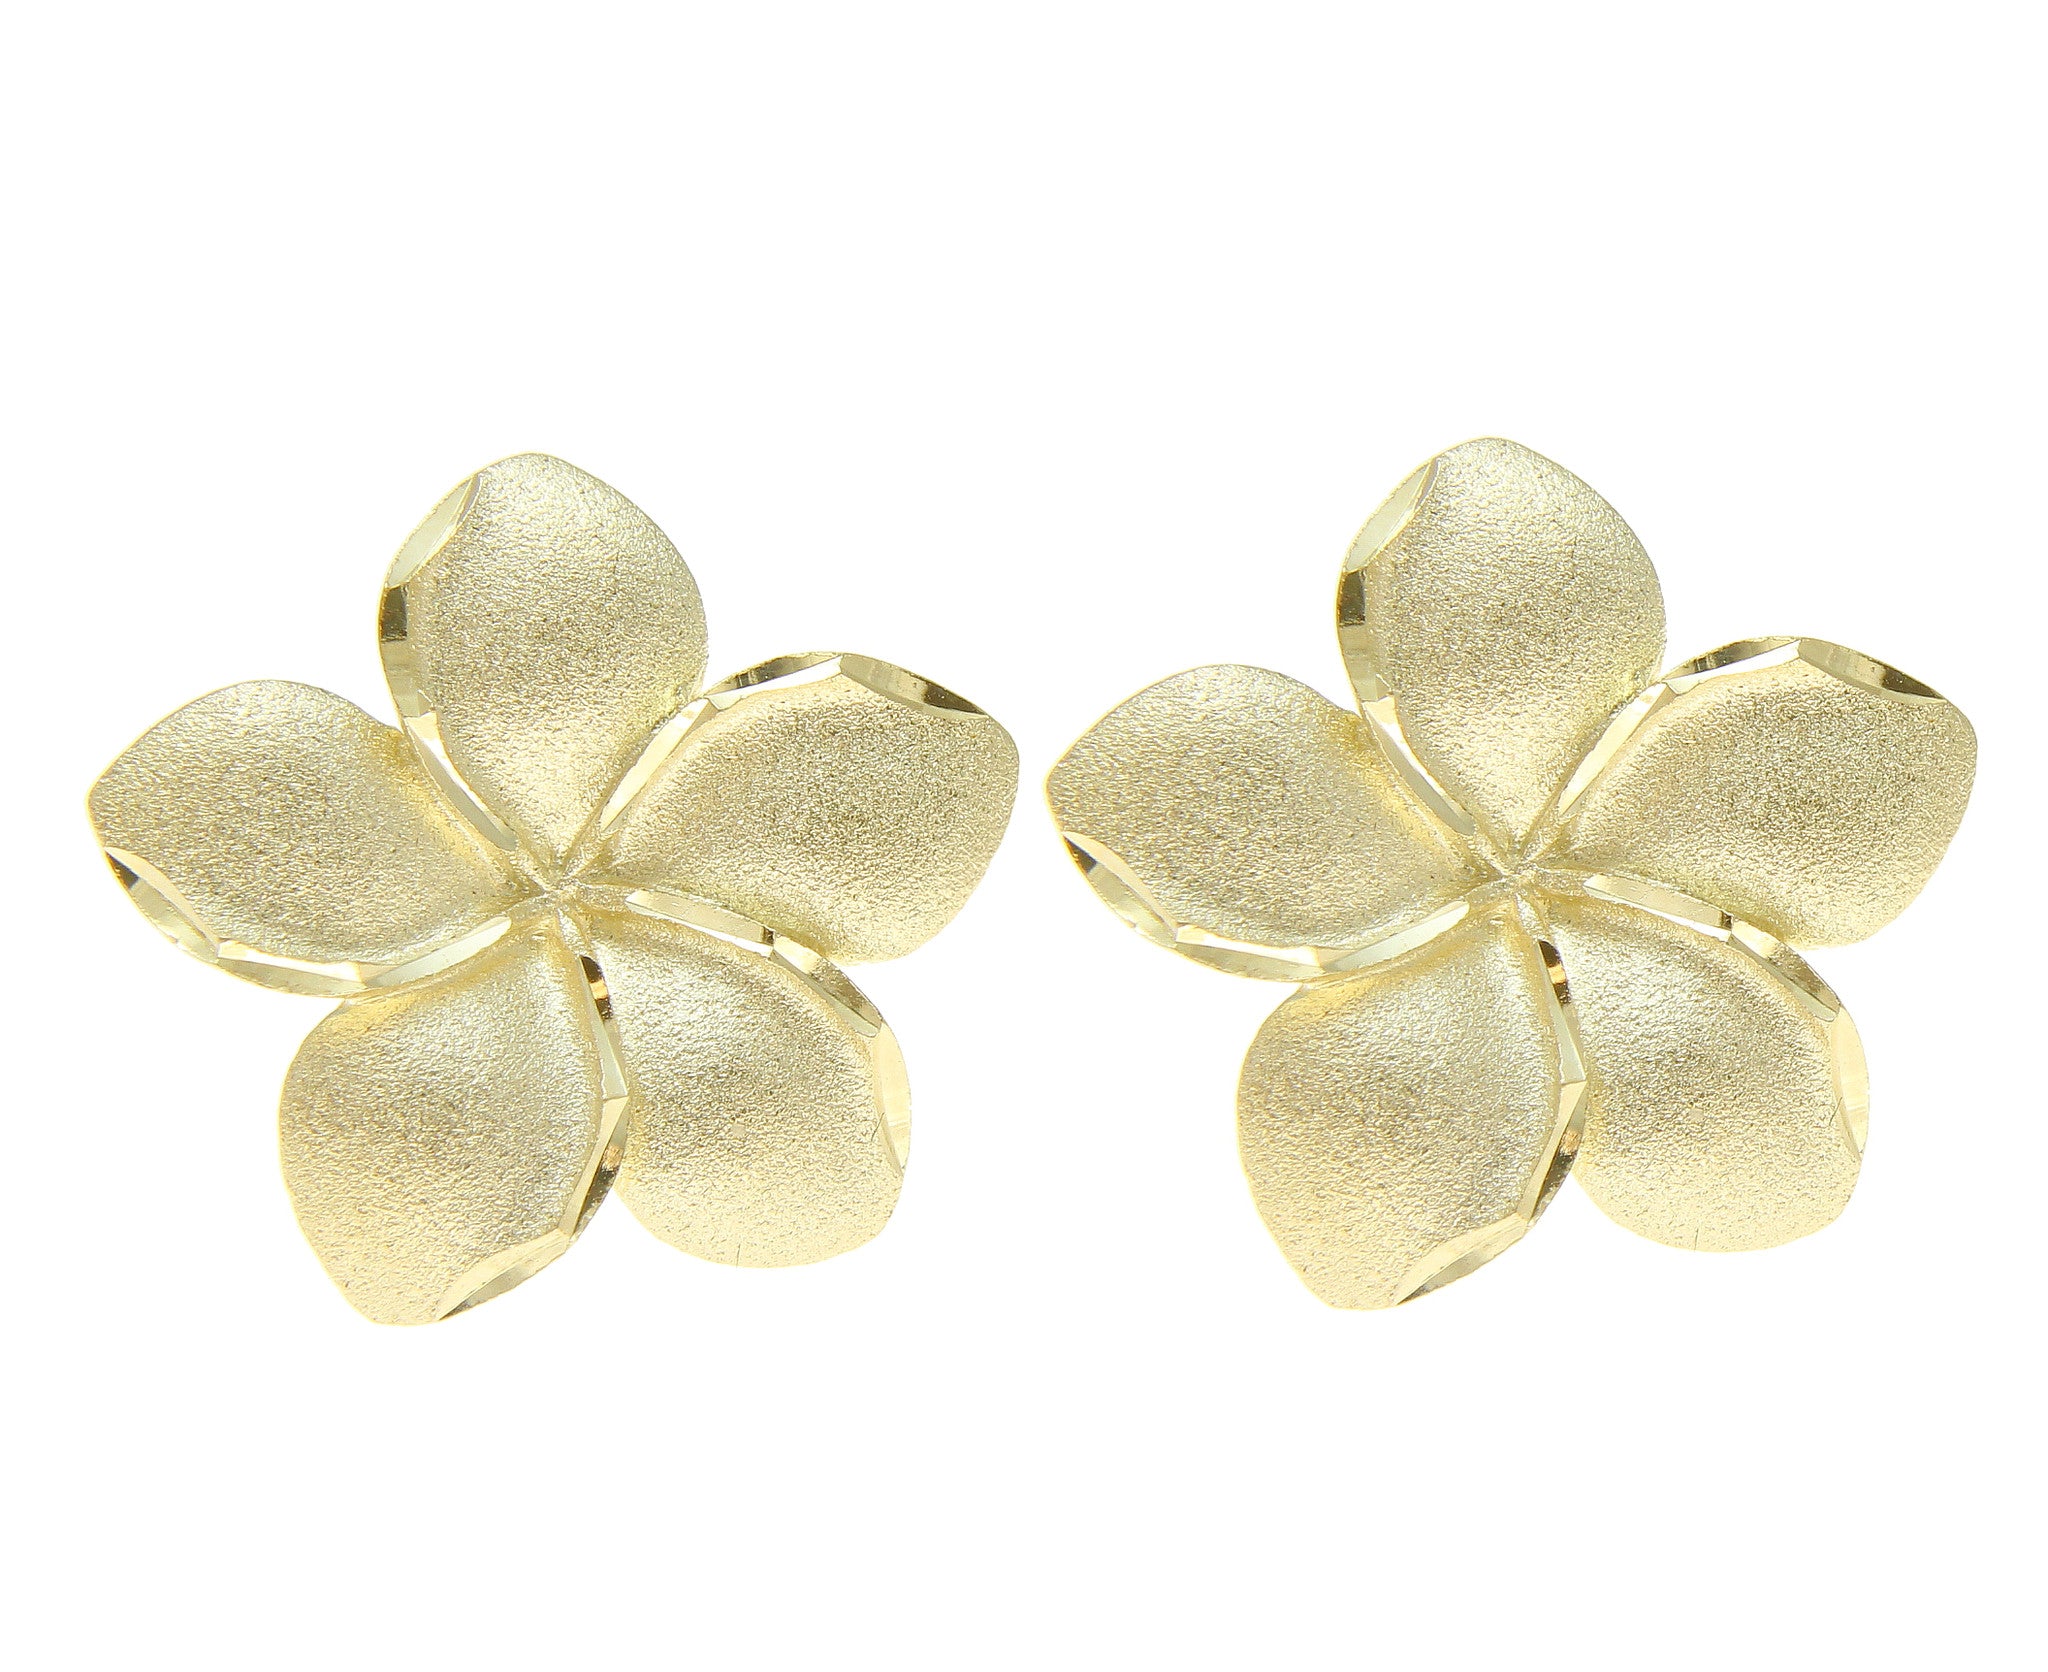 20mm solid 14k yellow gold hawaiian plumeria flower stud earrings